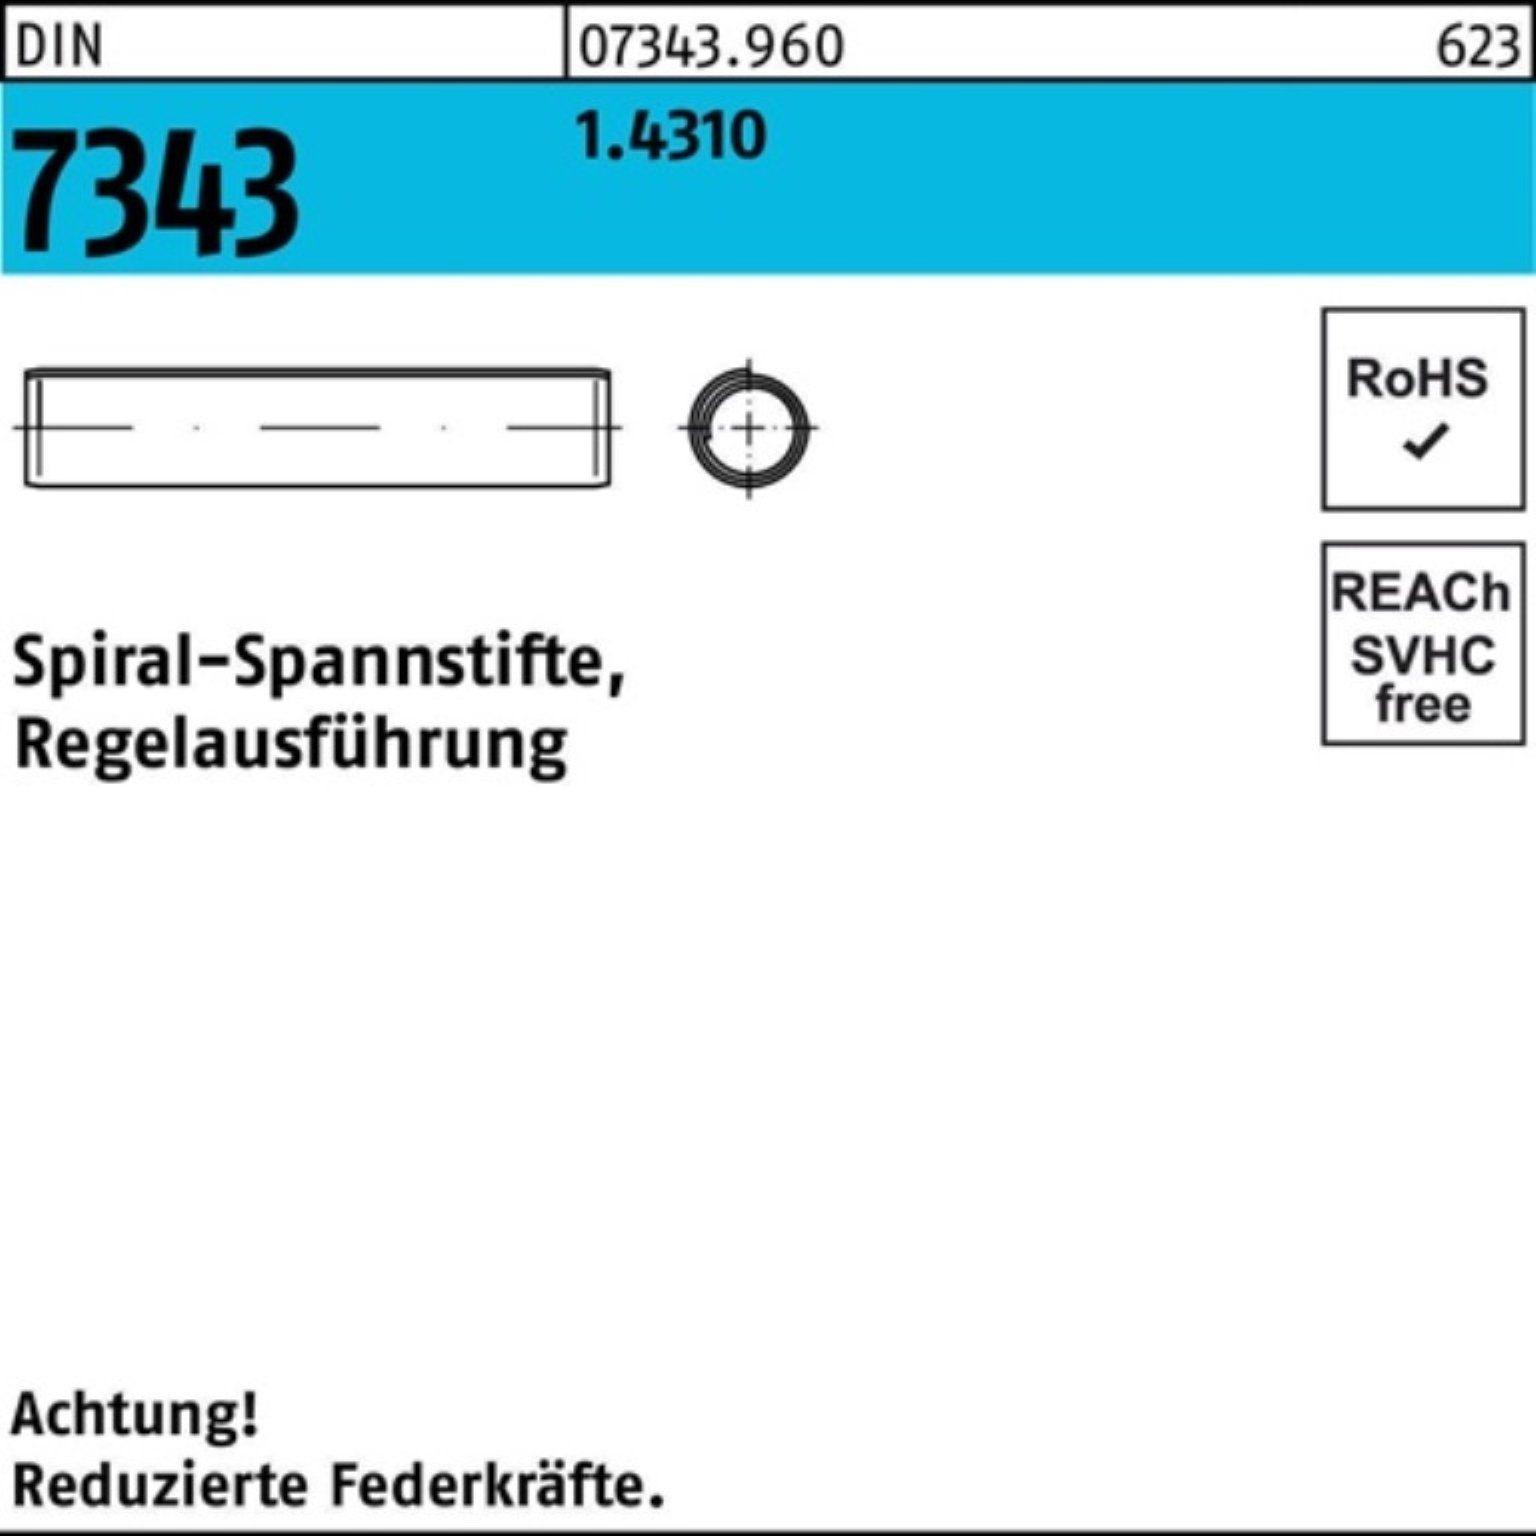 Spannstift 500er DIN 8x Regelausf. 7343/ISO Pack Reyher 30 1.4310 8750 Spiralspannstift